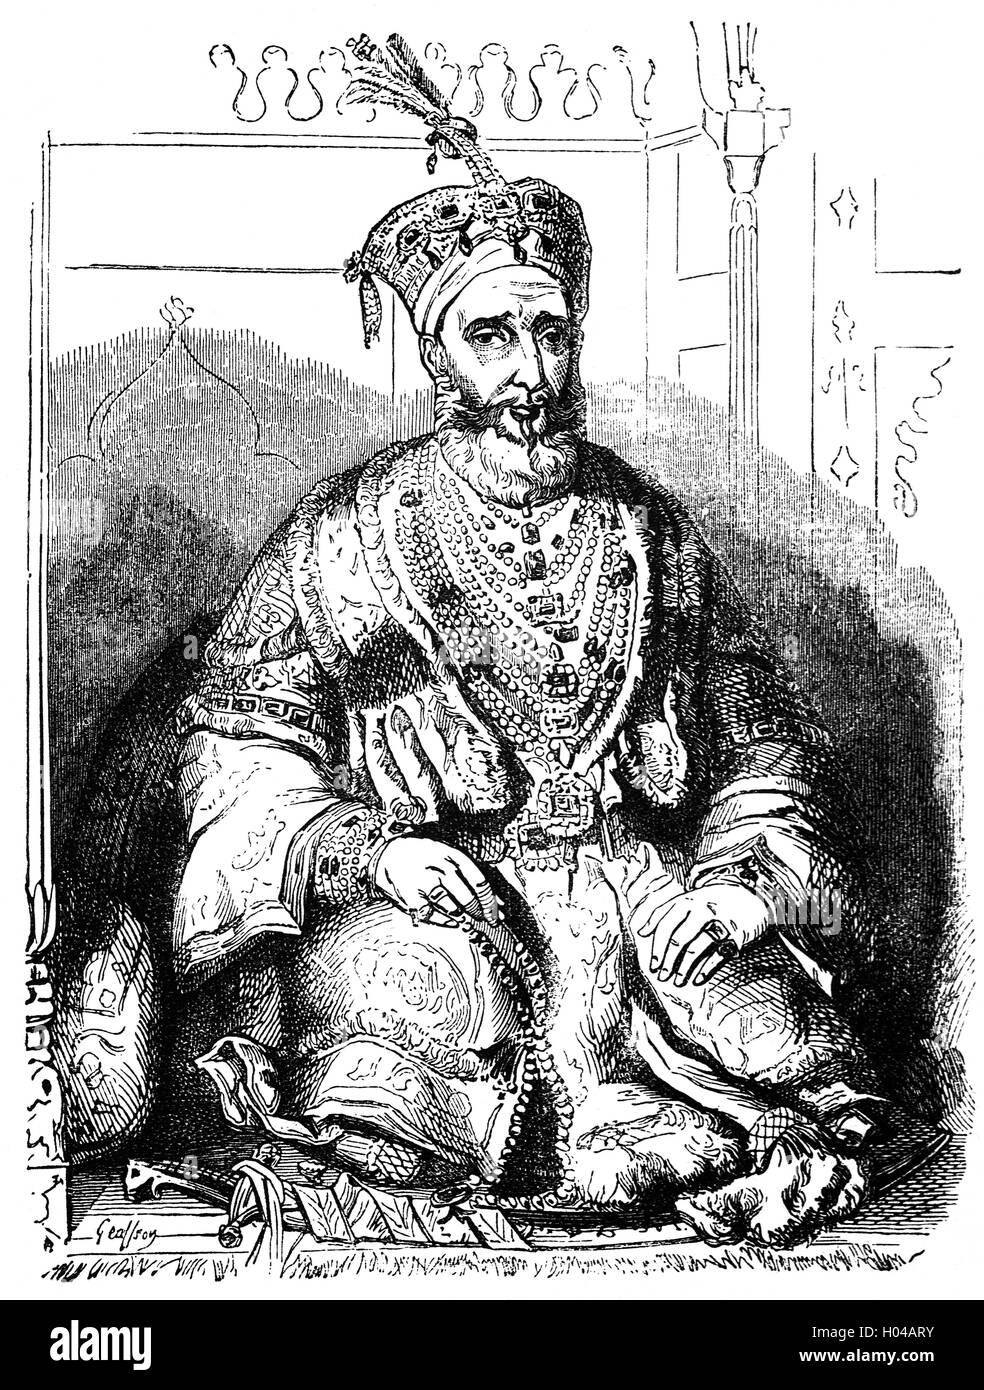 Mirza Abu Zafar Sirajuddin Muhammad Bahadur Shah Zafar war der letzte Mogulkaiser, ein reiches, das in nur Namen und seine Autorität gab es beschränkte sich nur auf die Stadt von Delhi. Nach seiner Beteiligung an der indischen Aufstand von 1857 verbannte ihn die Briten nach Rangun in Burma, die Briten kontrolliert, nach der Verurteilung von ihm unter dem Vorwurf der Verschwörung in ein Femegericht. Stockfoto